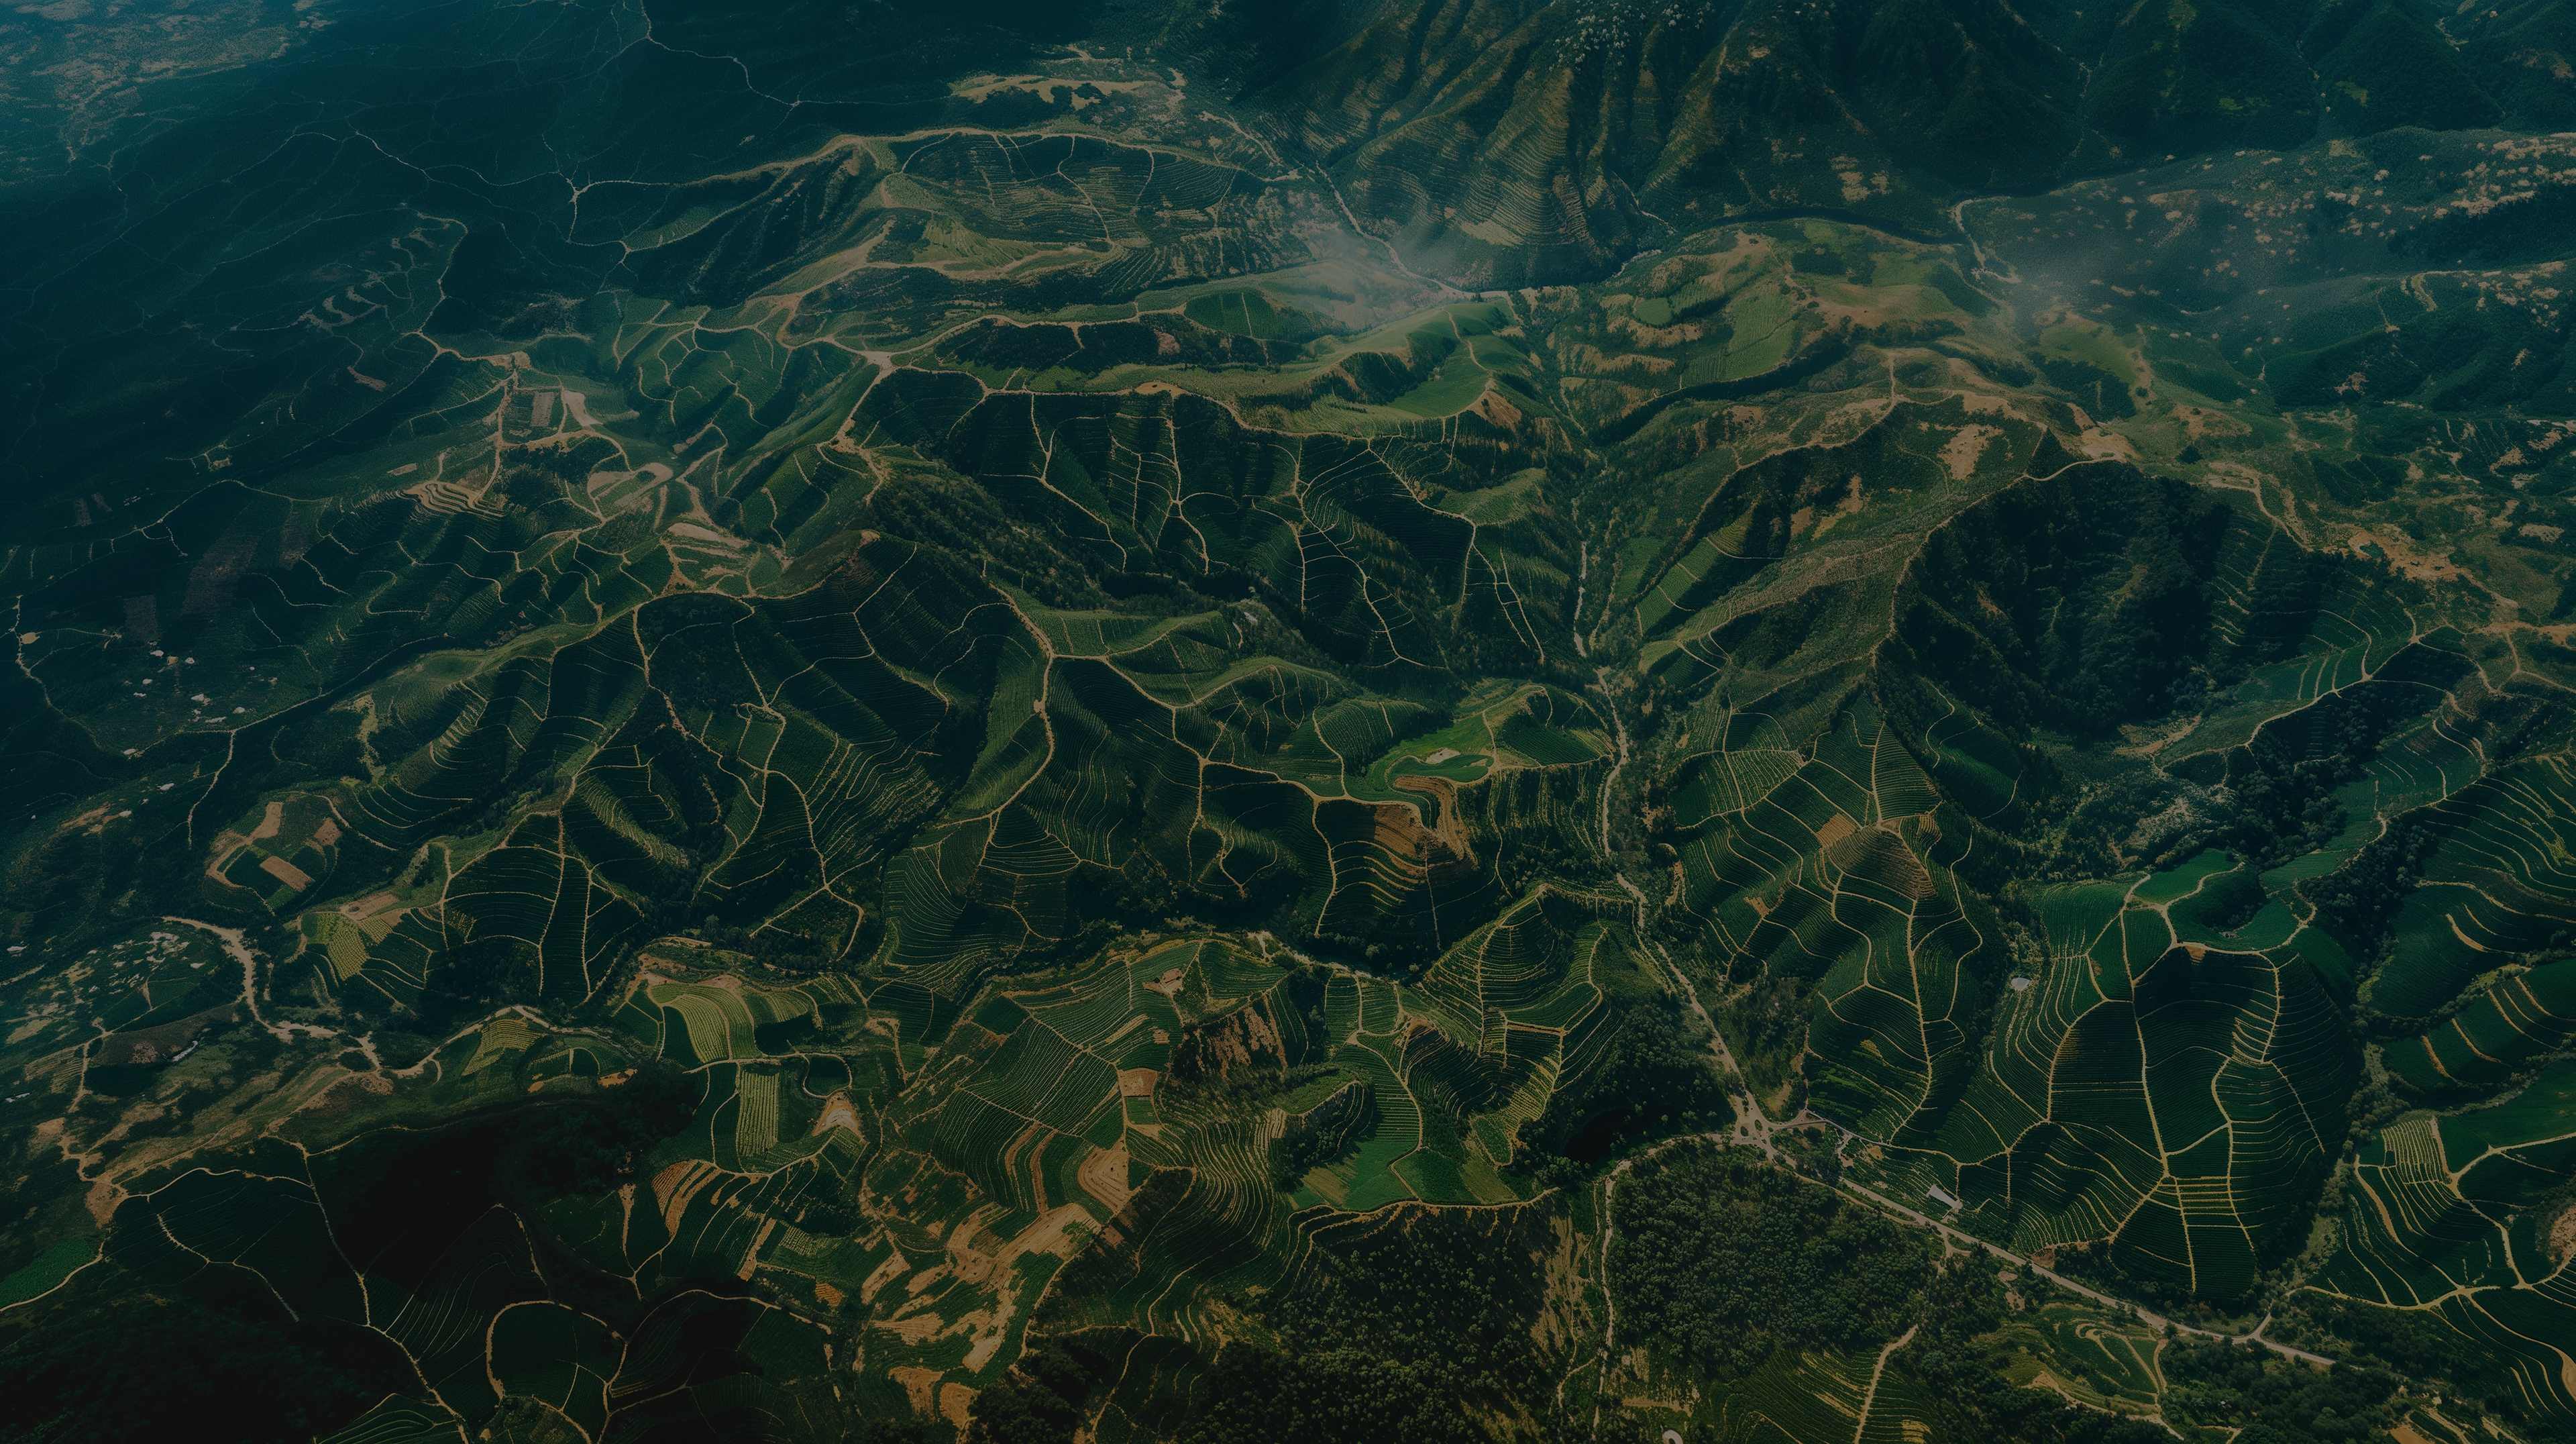 satellite imagery of a mountainous region